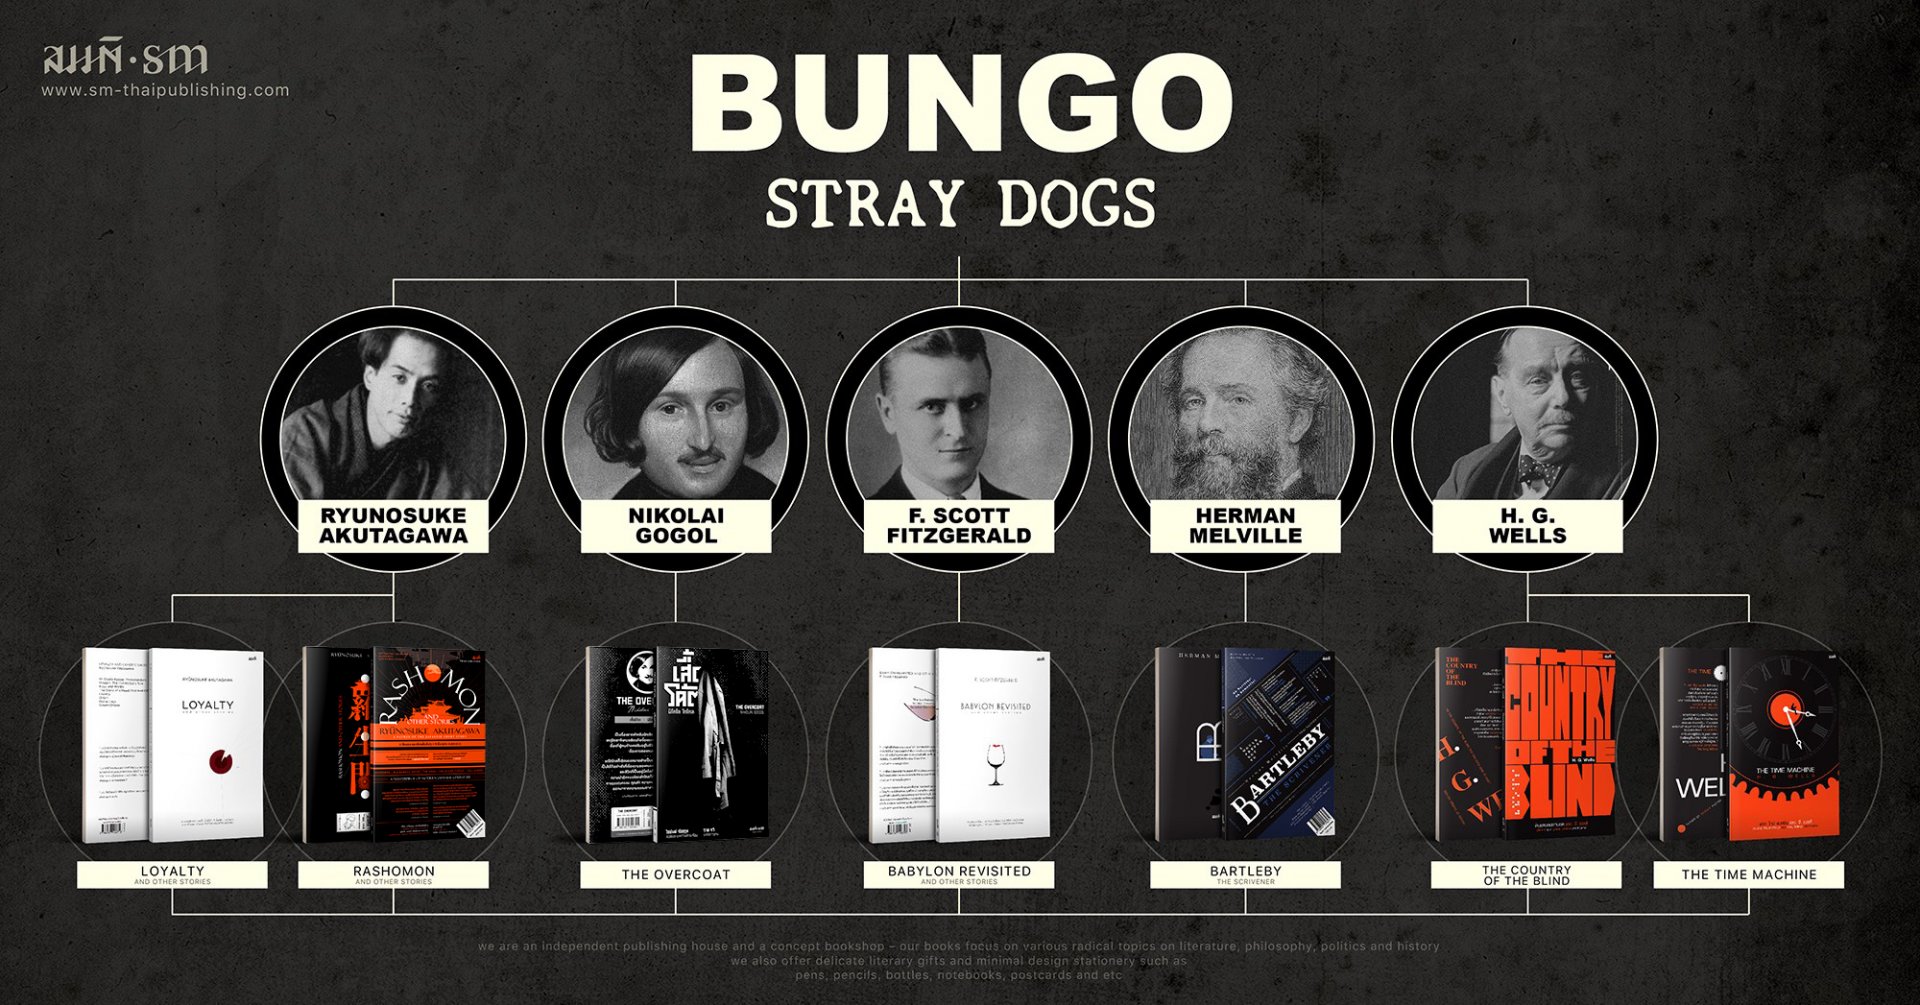 Bungo Stray Dogs แนะนำหนังสือฉบับภาษาไทยของนักเขียนในเรื่อง